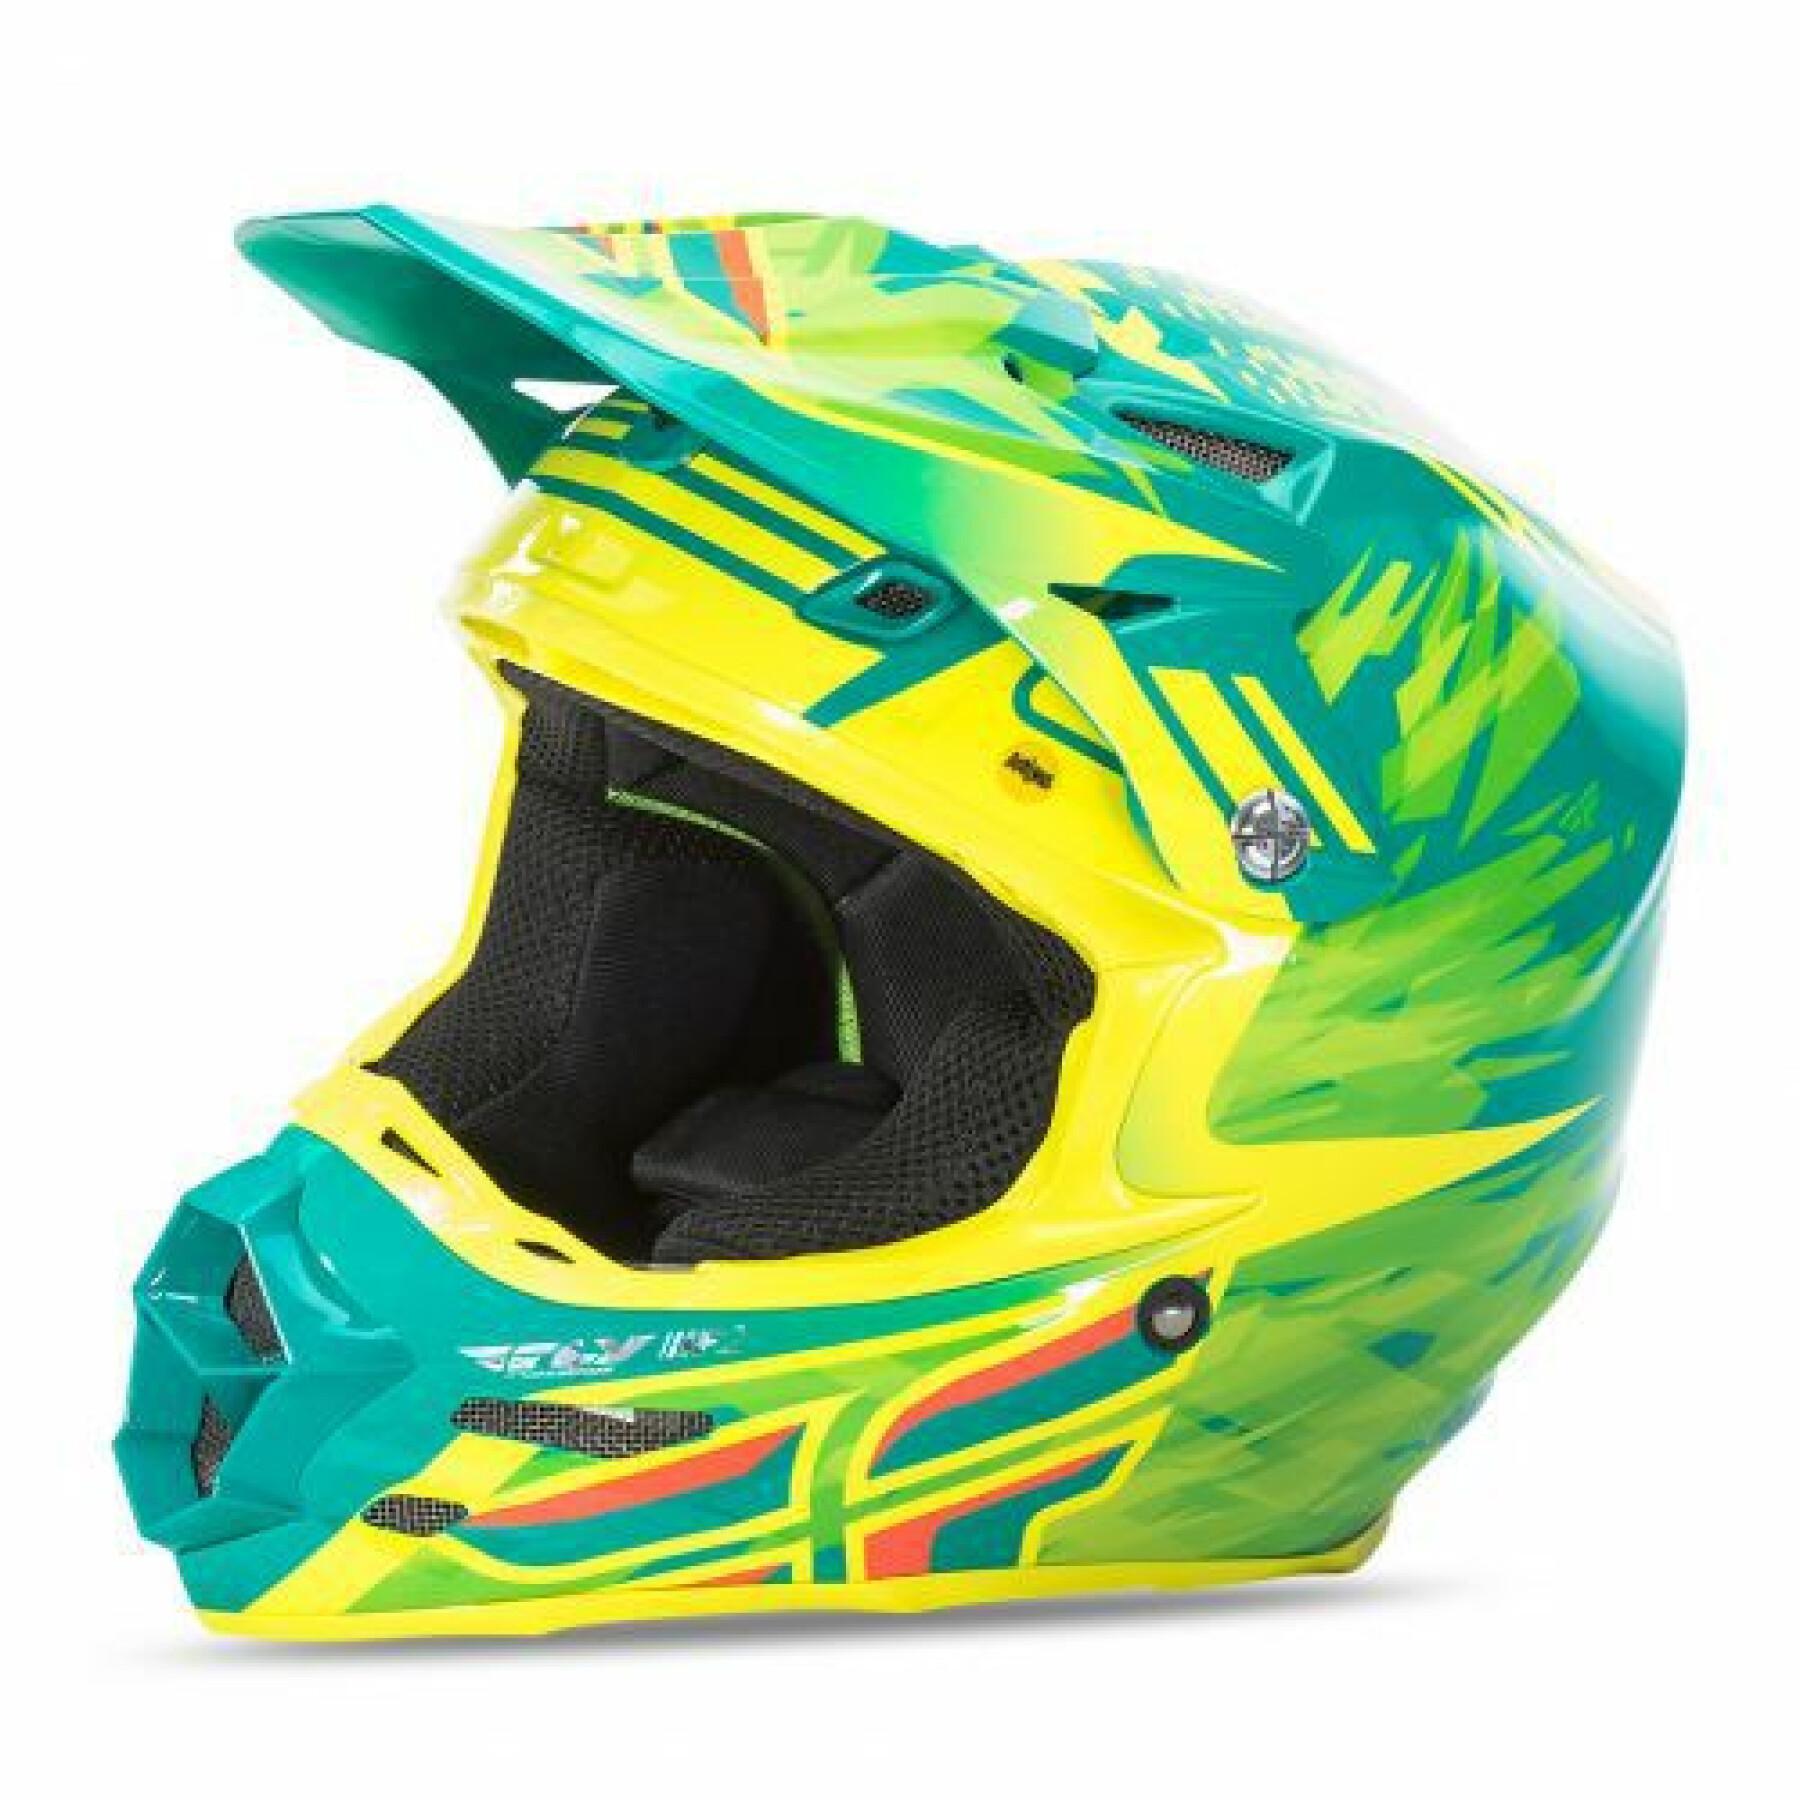 Motorcycle helmet Fly Racing F2 Carbon Replica Andrew Short 2017